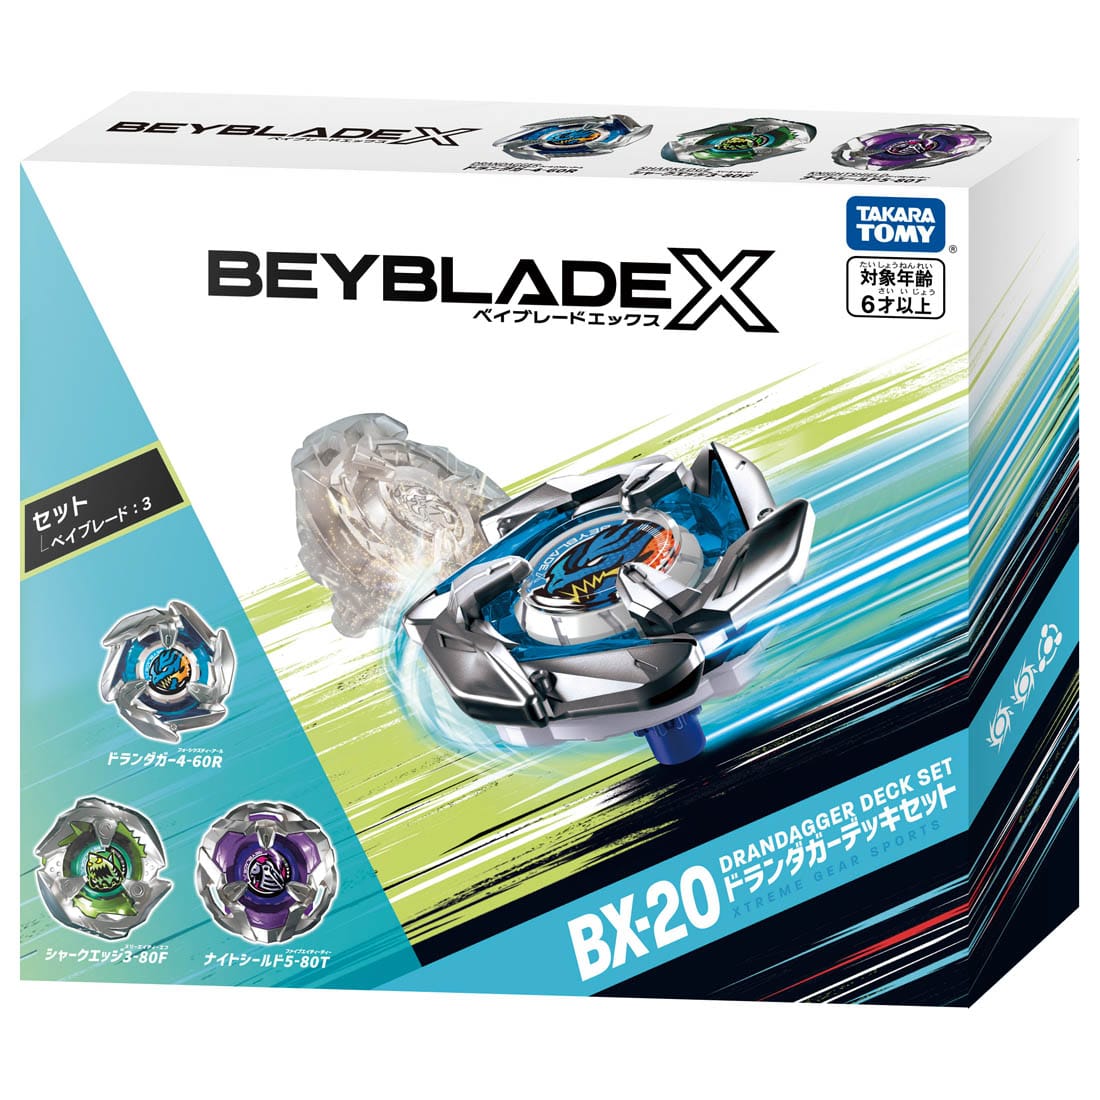 BEYBLADE X『BX-20 ドランダガーデッキセット』ベイブレード-002